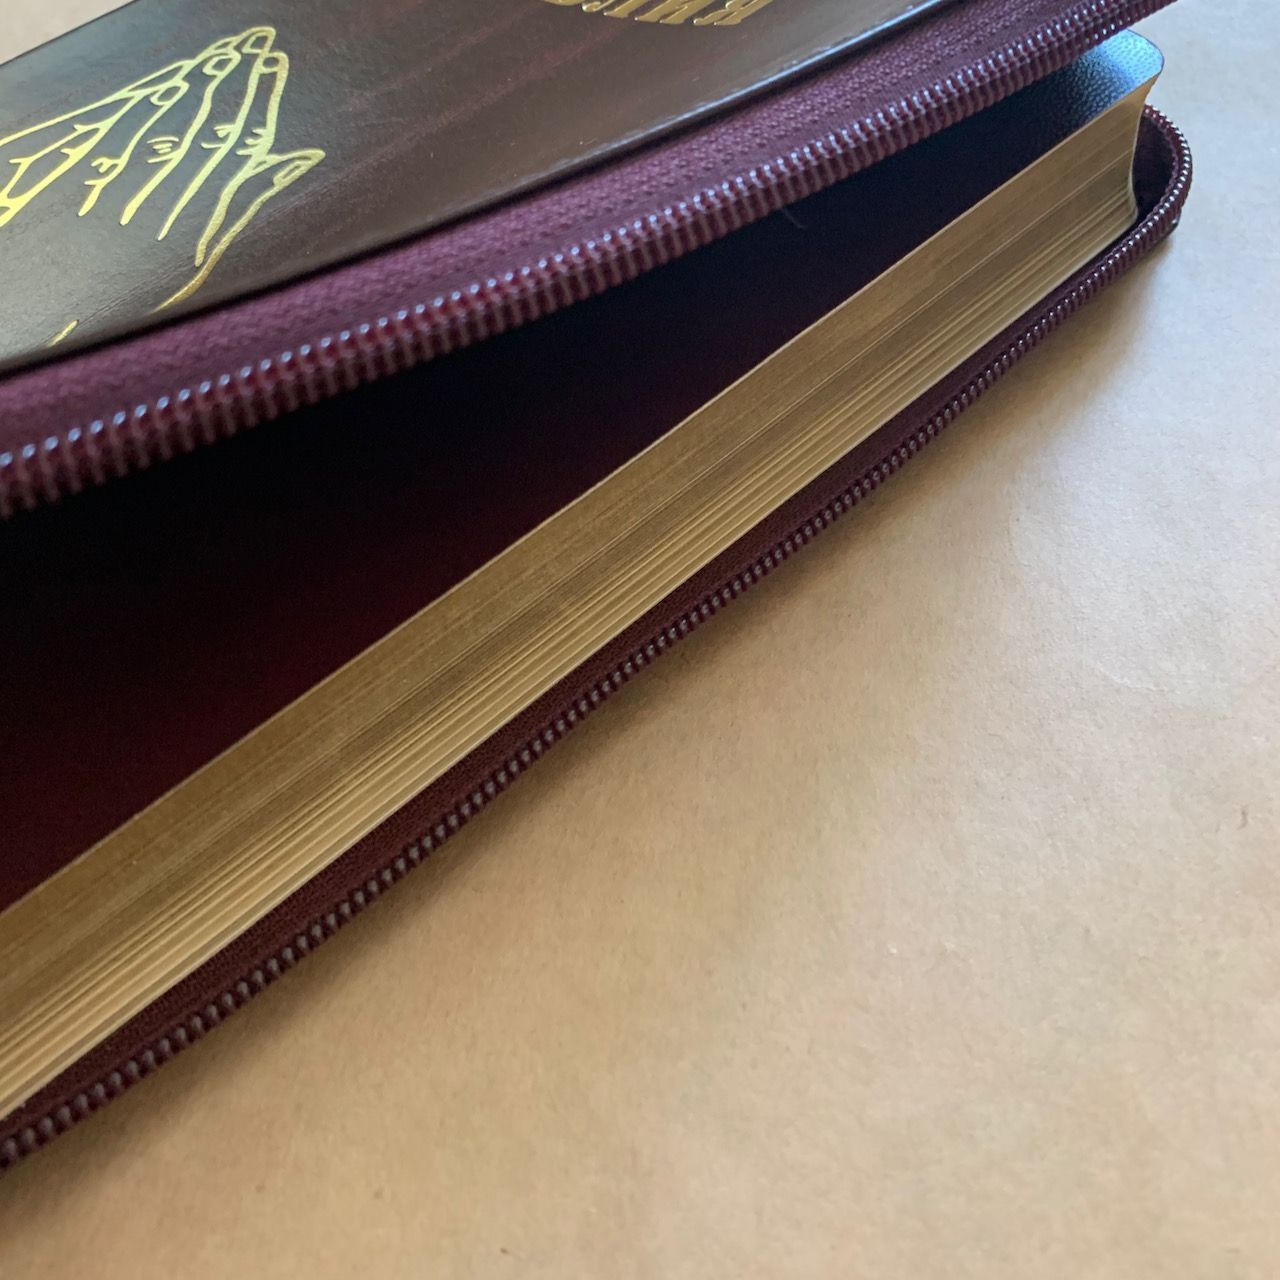 Библия 055z код I1 7118 переплет из натуральной кожи на молнии, цвет темно-бордовый металлик, дизайн золотые руки молящегося,, средний формат, 143*220 мм, паралельные места по центру страницы, золотой обрез, крупный шрифт